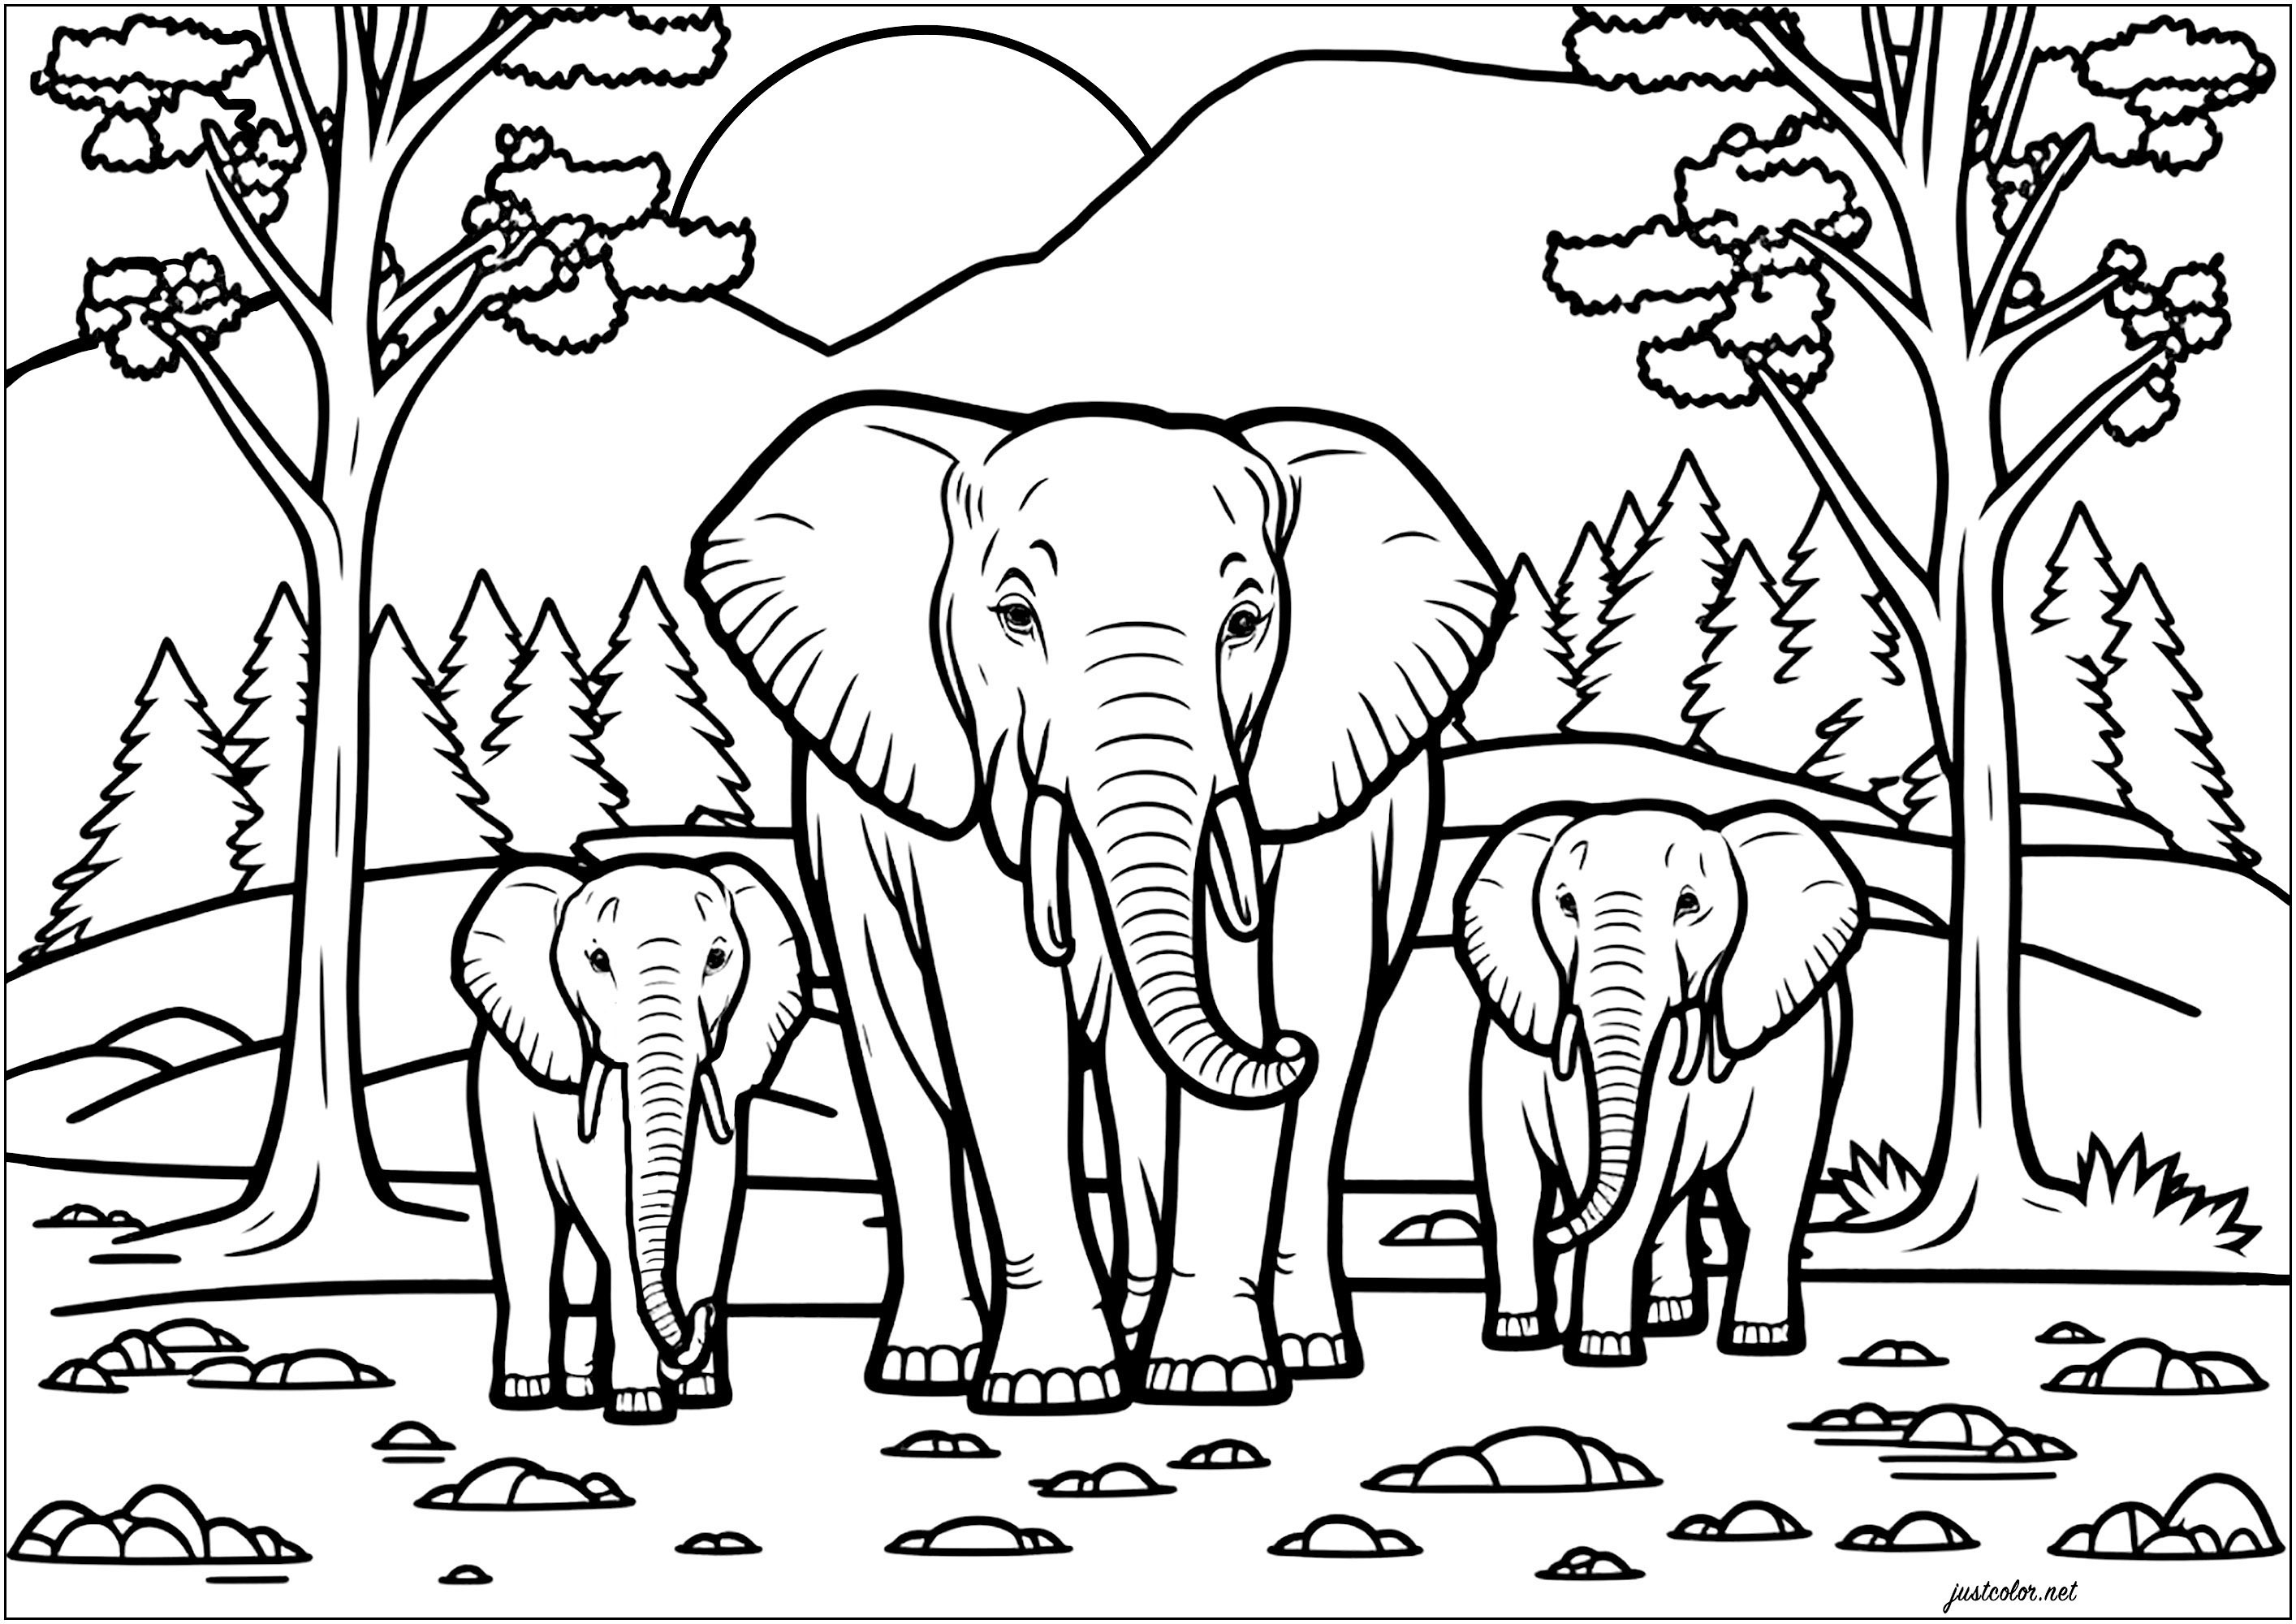 Familia de elefantes en la sabana. En el fondo: hermosos árboles, y una montaña detrás de la cual vemos salir el sol